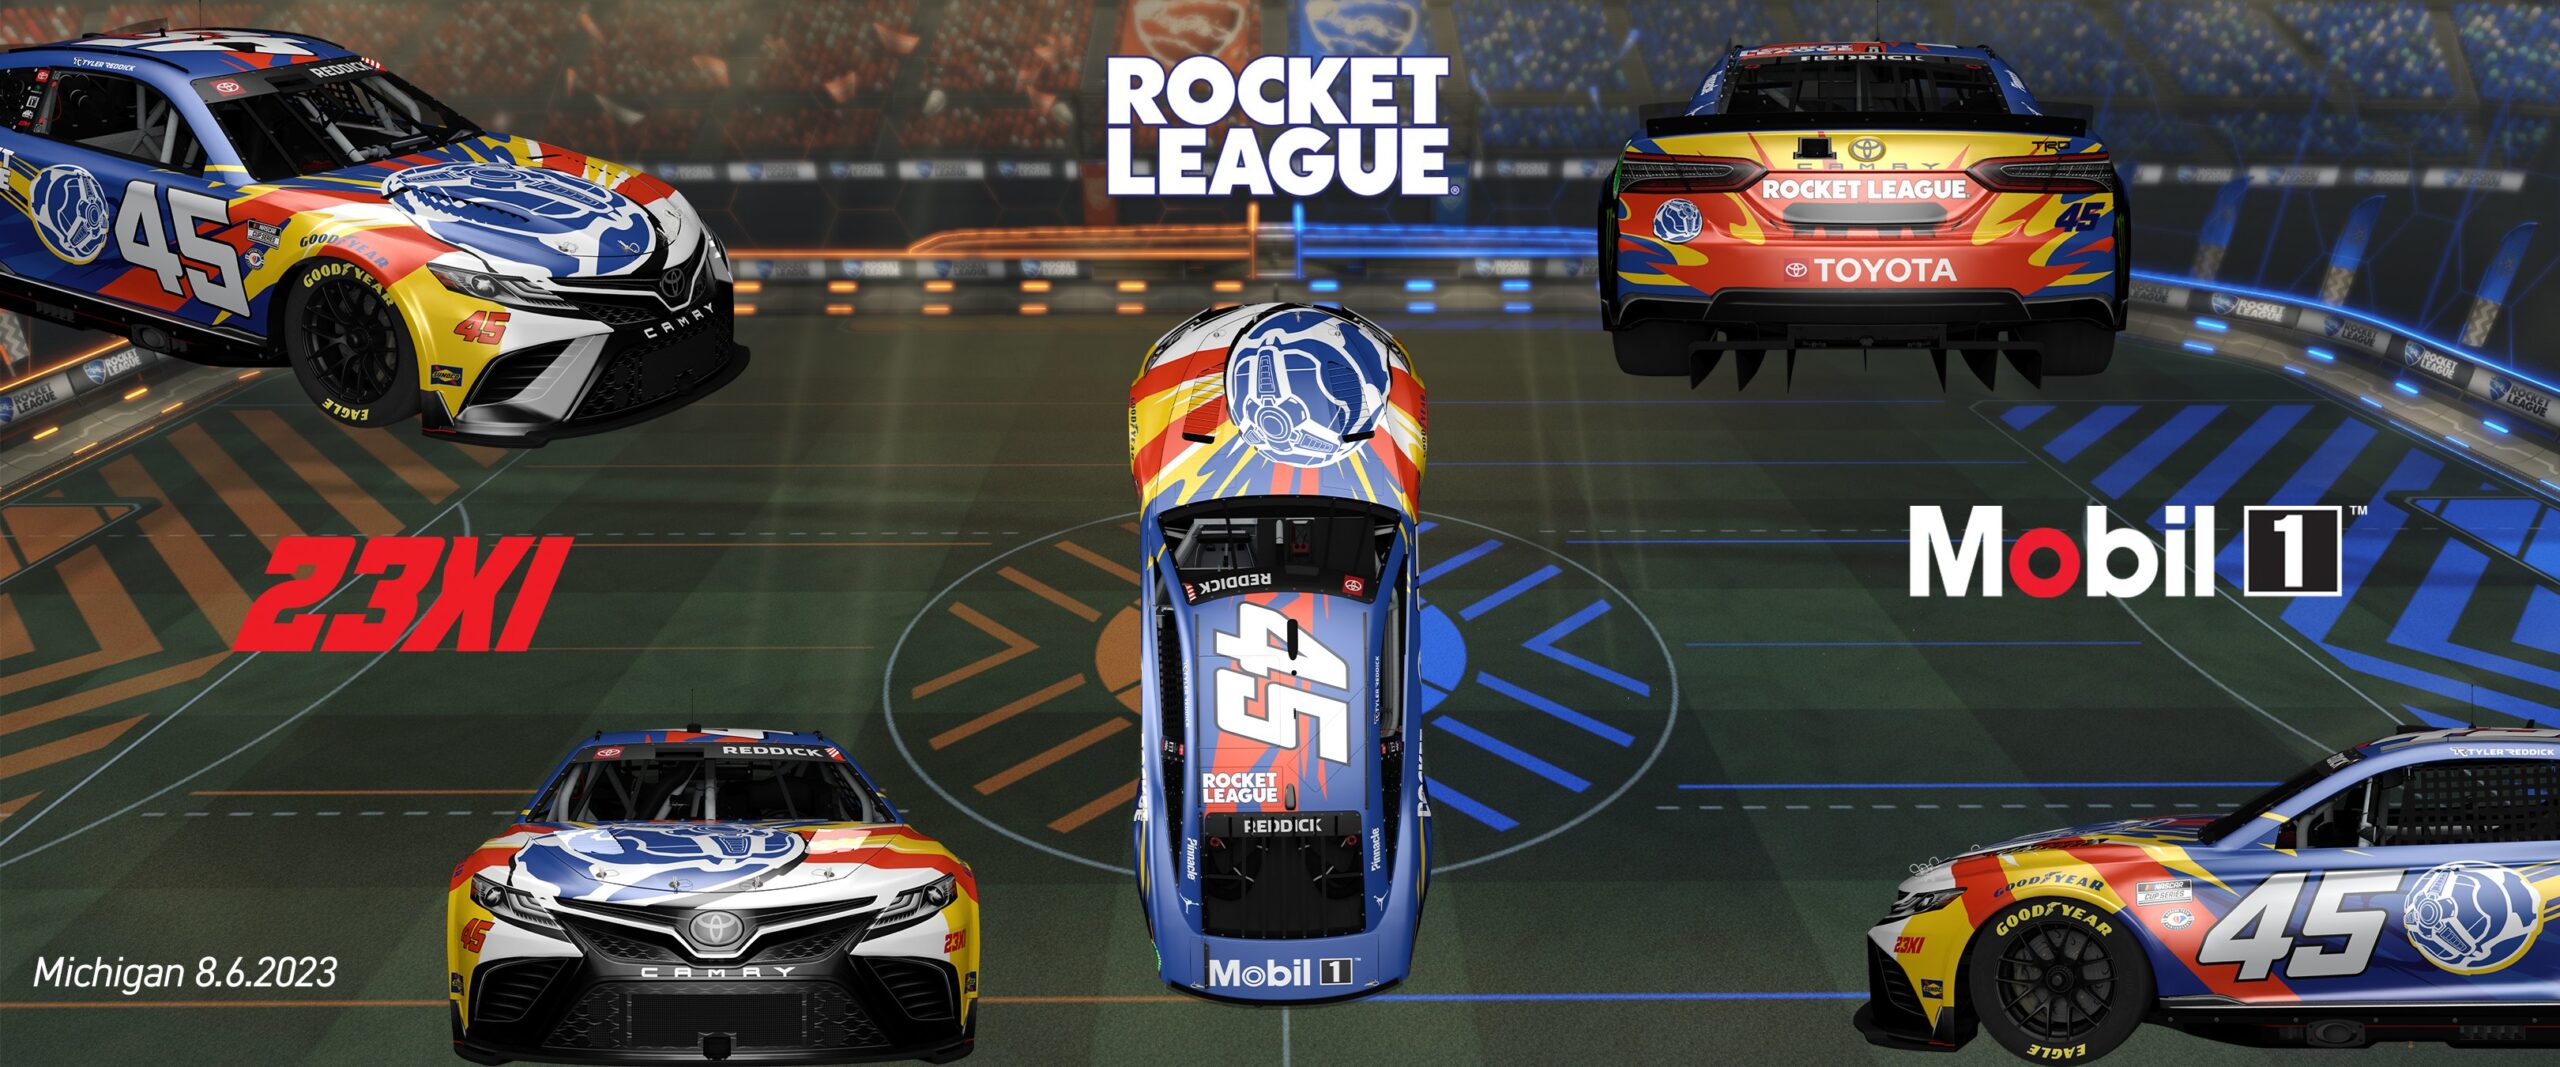 Tyler Reddick Rocket League car 2023 23XI Racing Rocket League car Michigan 2023